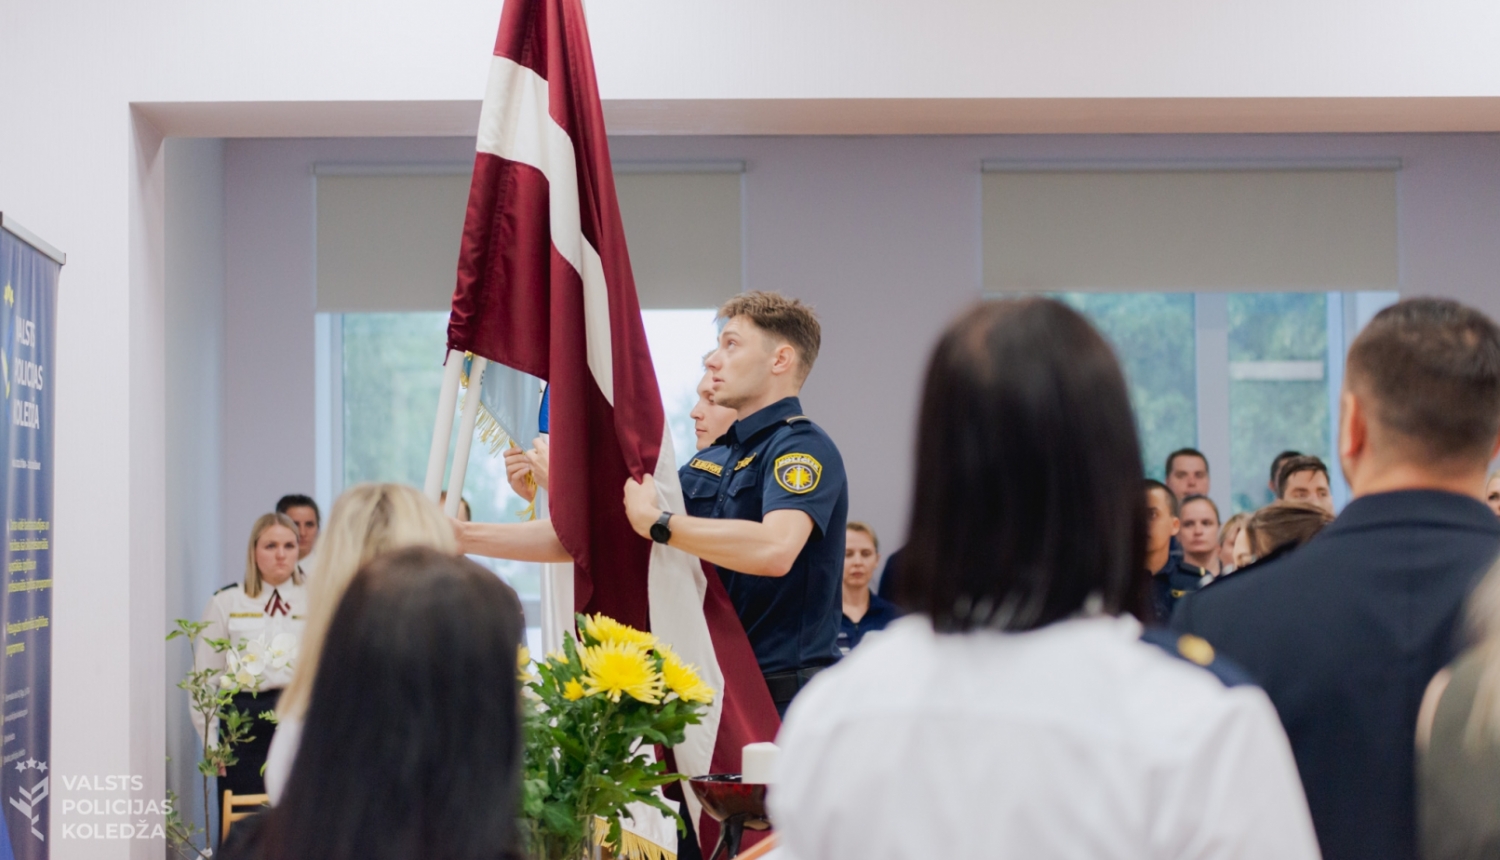 Valsts policijas koledžas kadeti pirms izlaiduma ienes Latvijas un Valsts policijas karogus